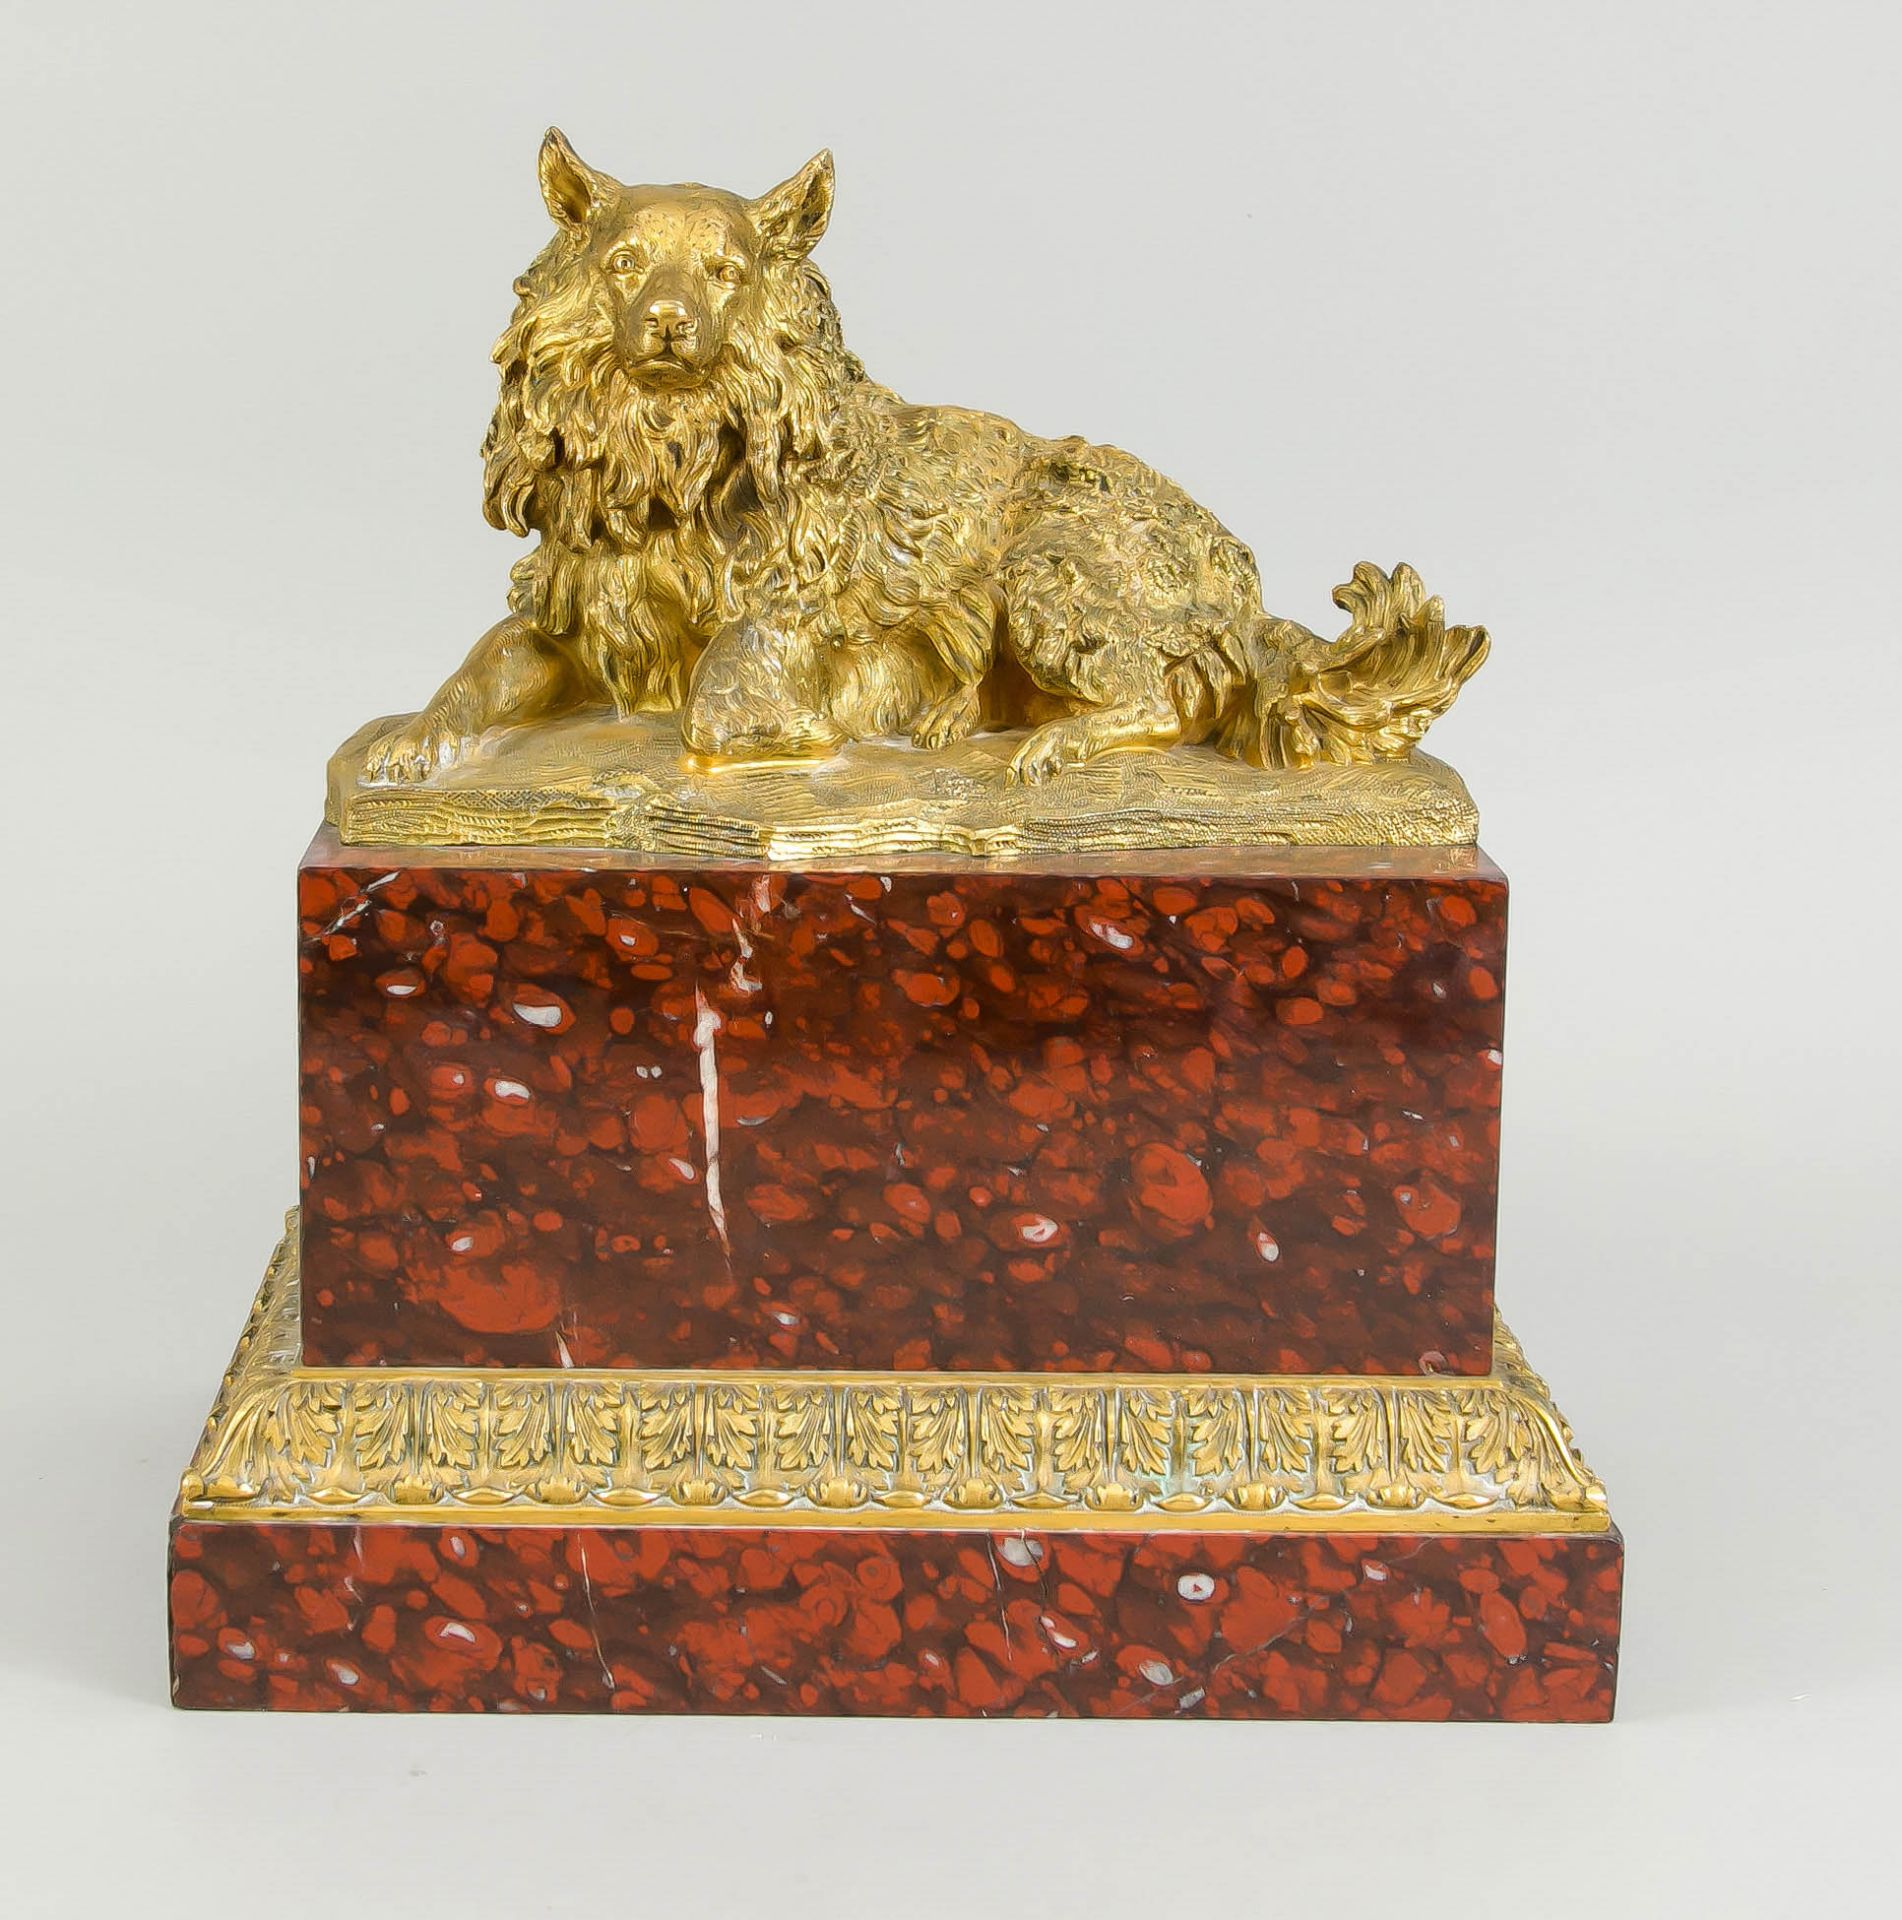 Unidentifizierter, wohl russischer Bildhauer des 19. Jh., großer, zotteliger Hund in vergoldeter und